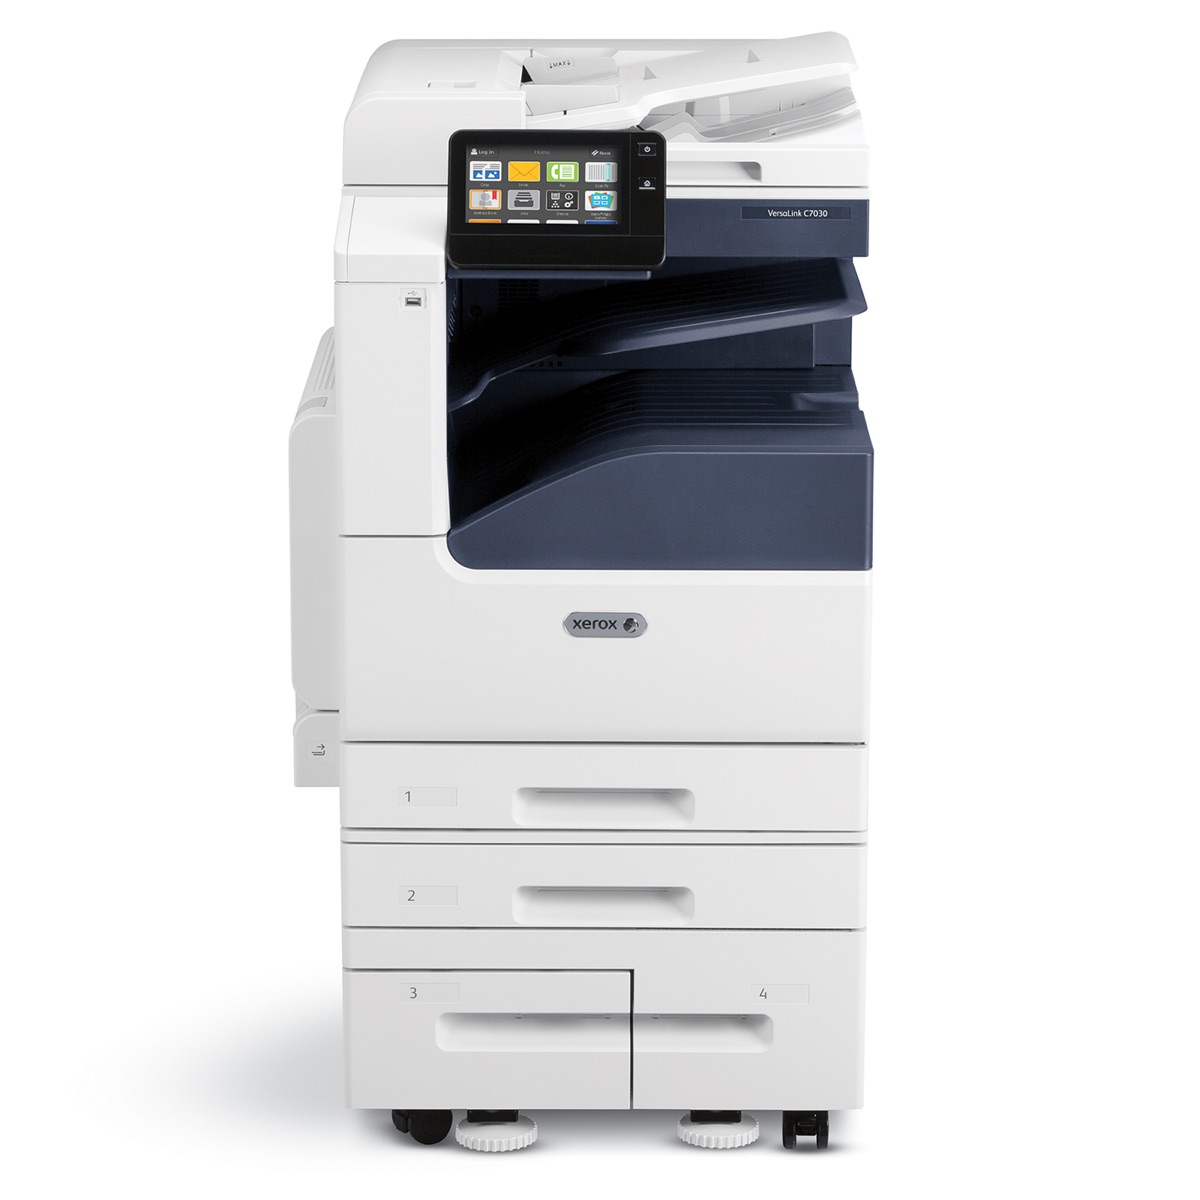 Xerox Copiers:  The Xerox VersaLink C7020/DS2 Copier